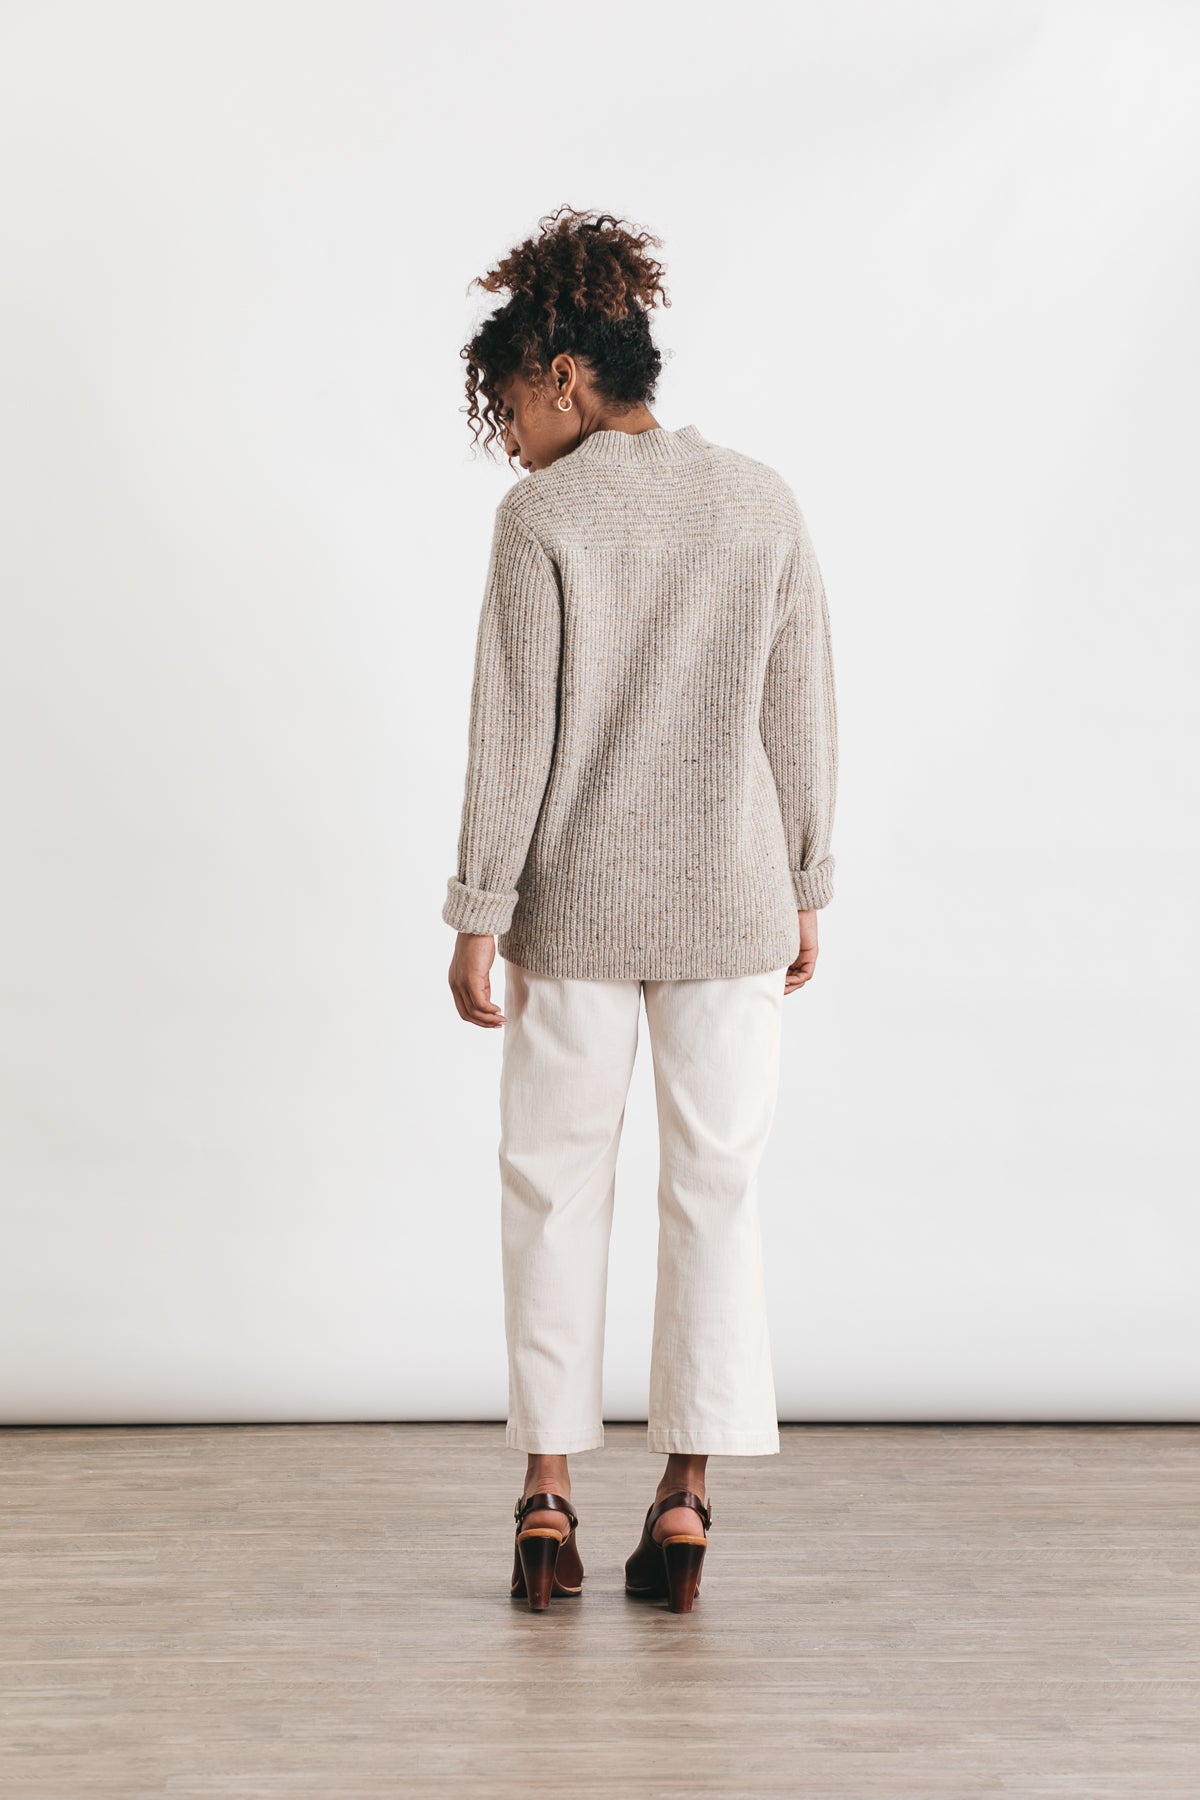 Chloe Mockneck Sweater / Oatmeal